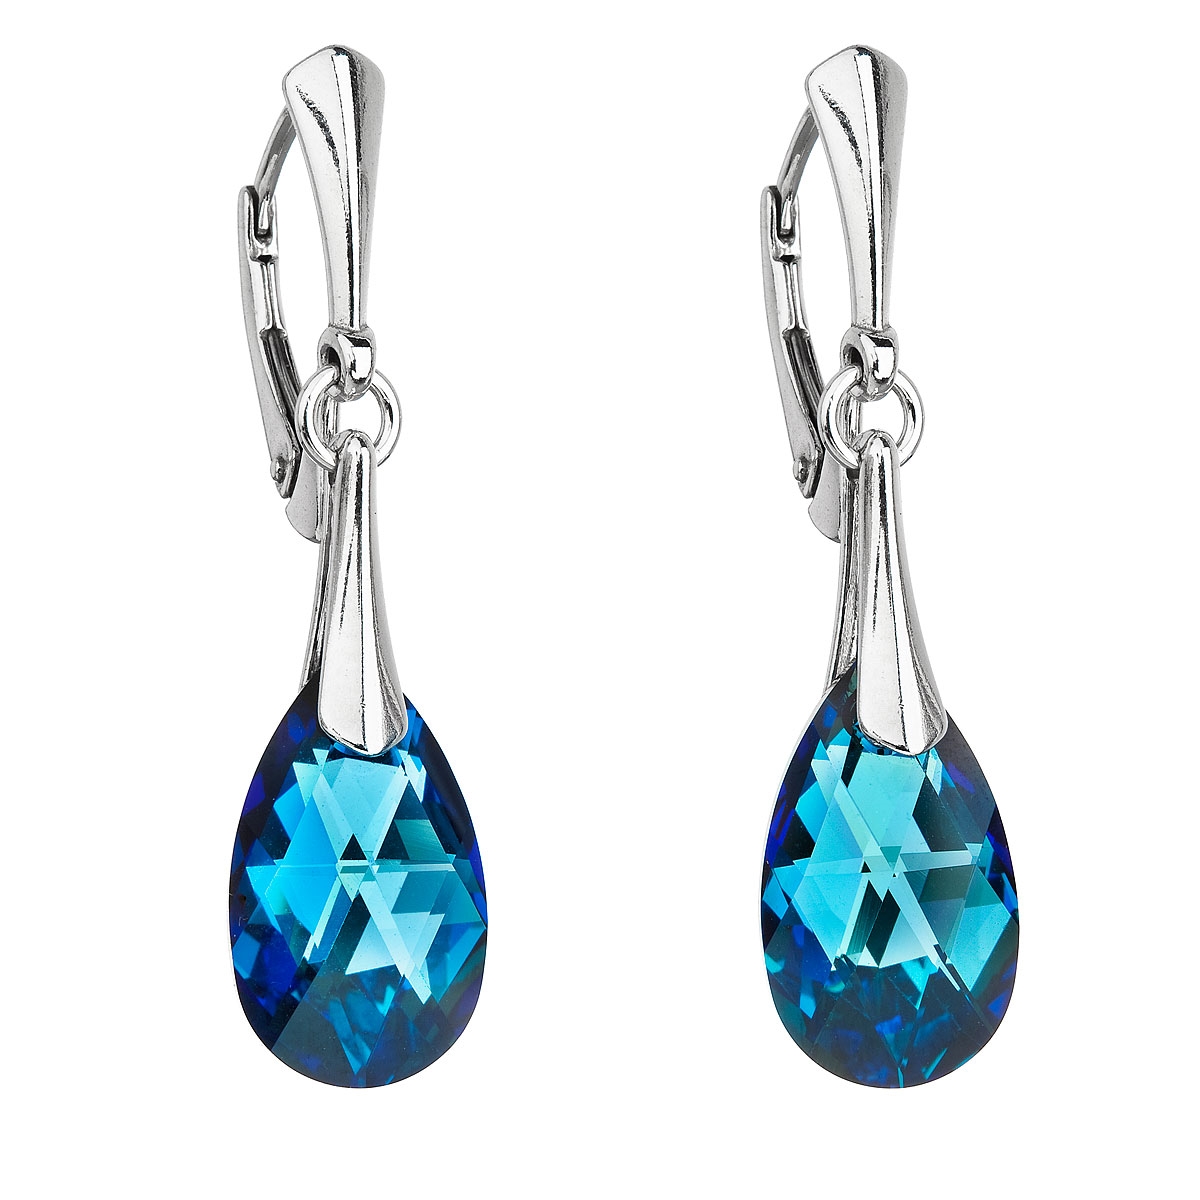 Strieborné náušnice slzy s kameňmi Crystals from Swarovski ® Beruda Blue